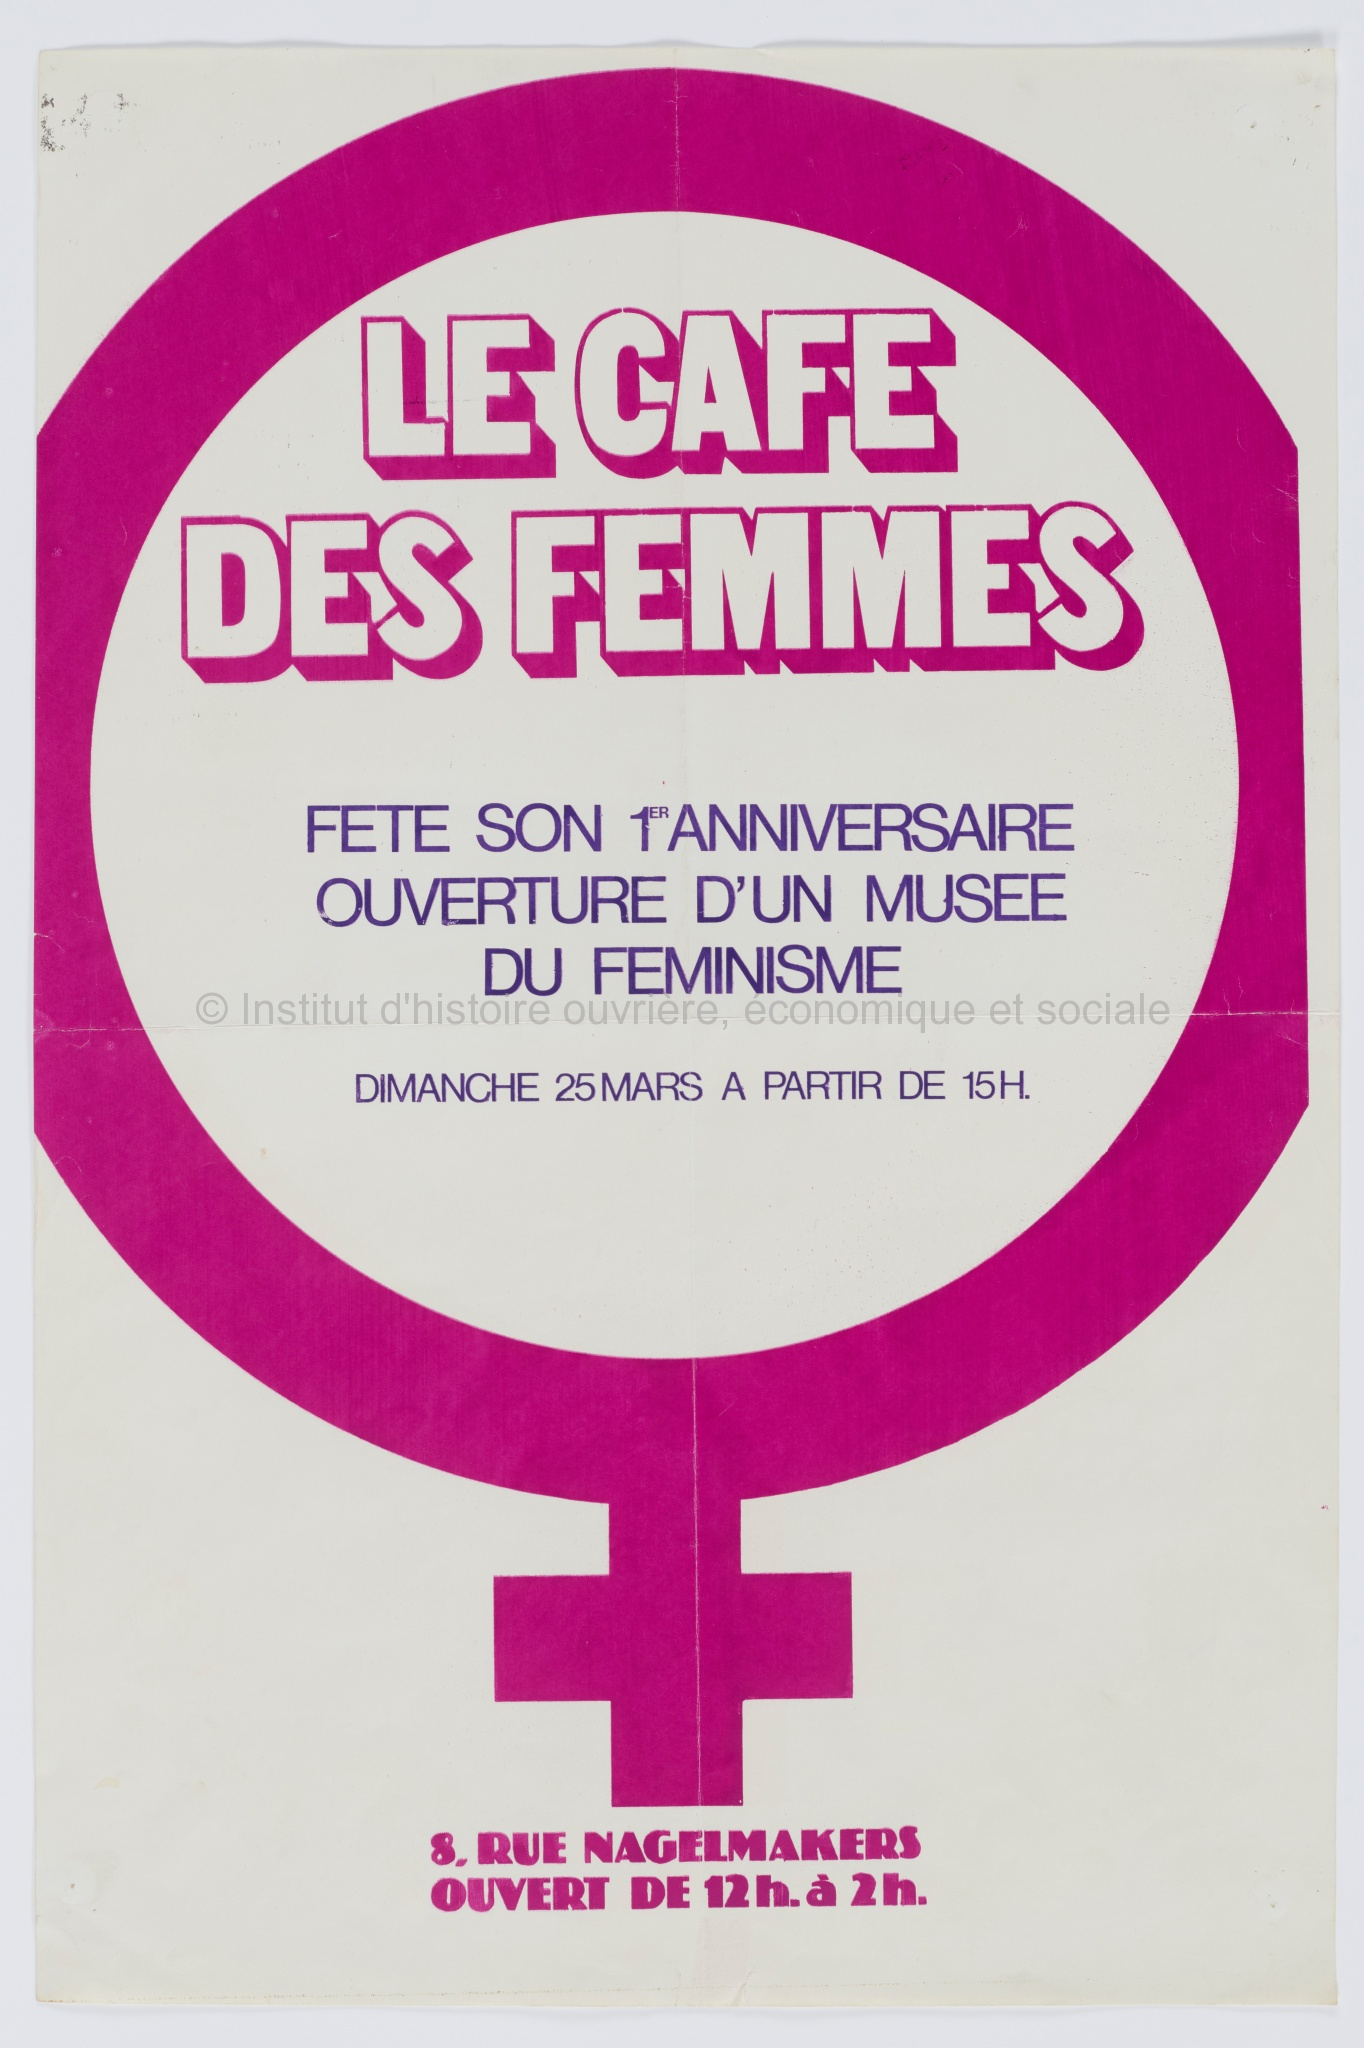 Le Café des femmes fête son 1er anniversaire - ouverture d'un musée du féminisme dimanche 25 mars à partir de 15h